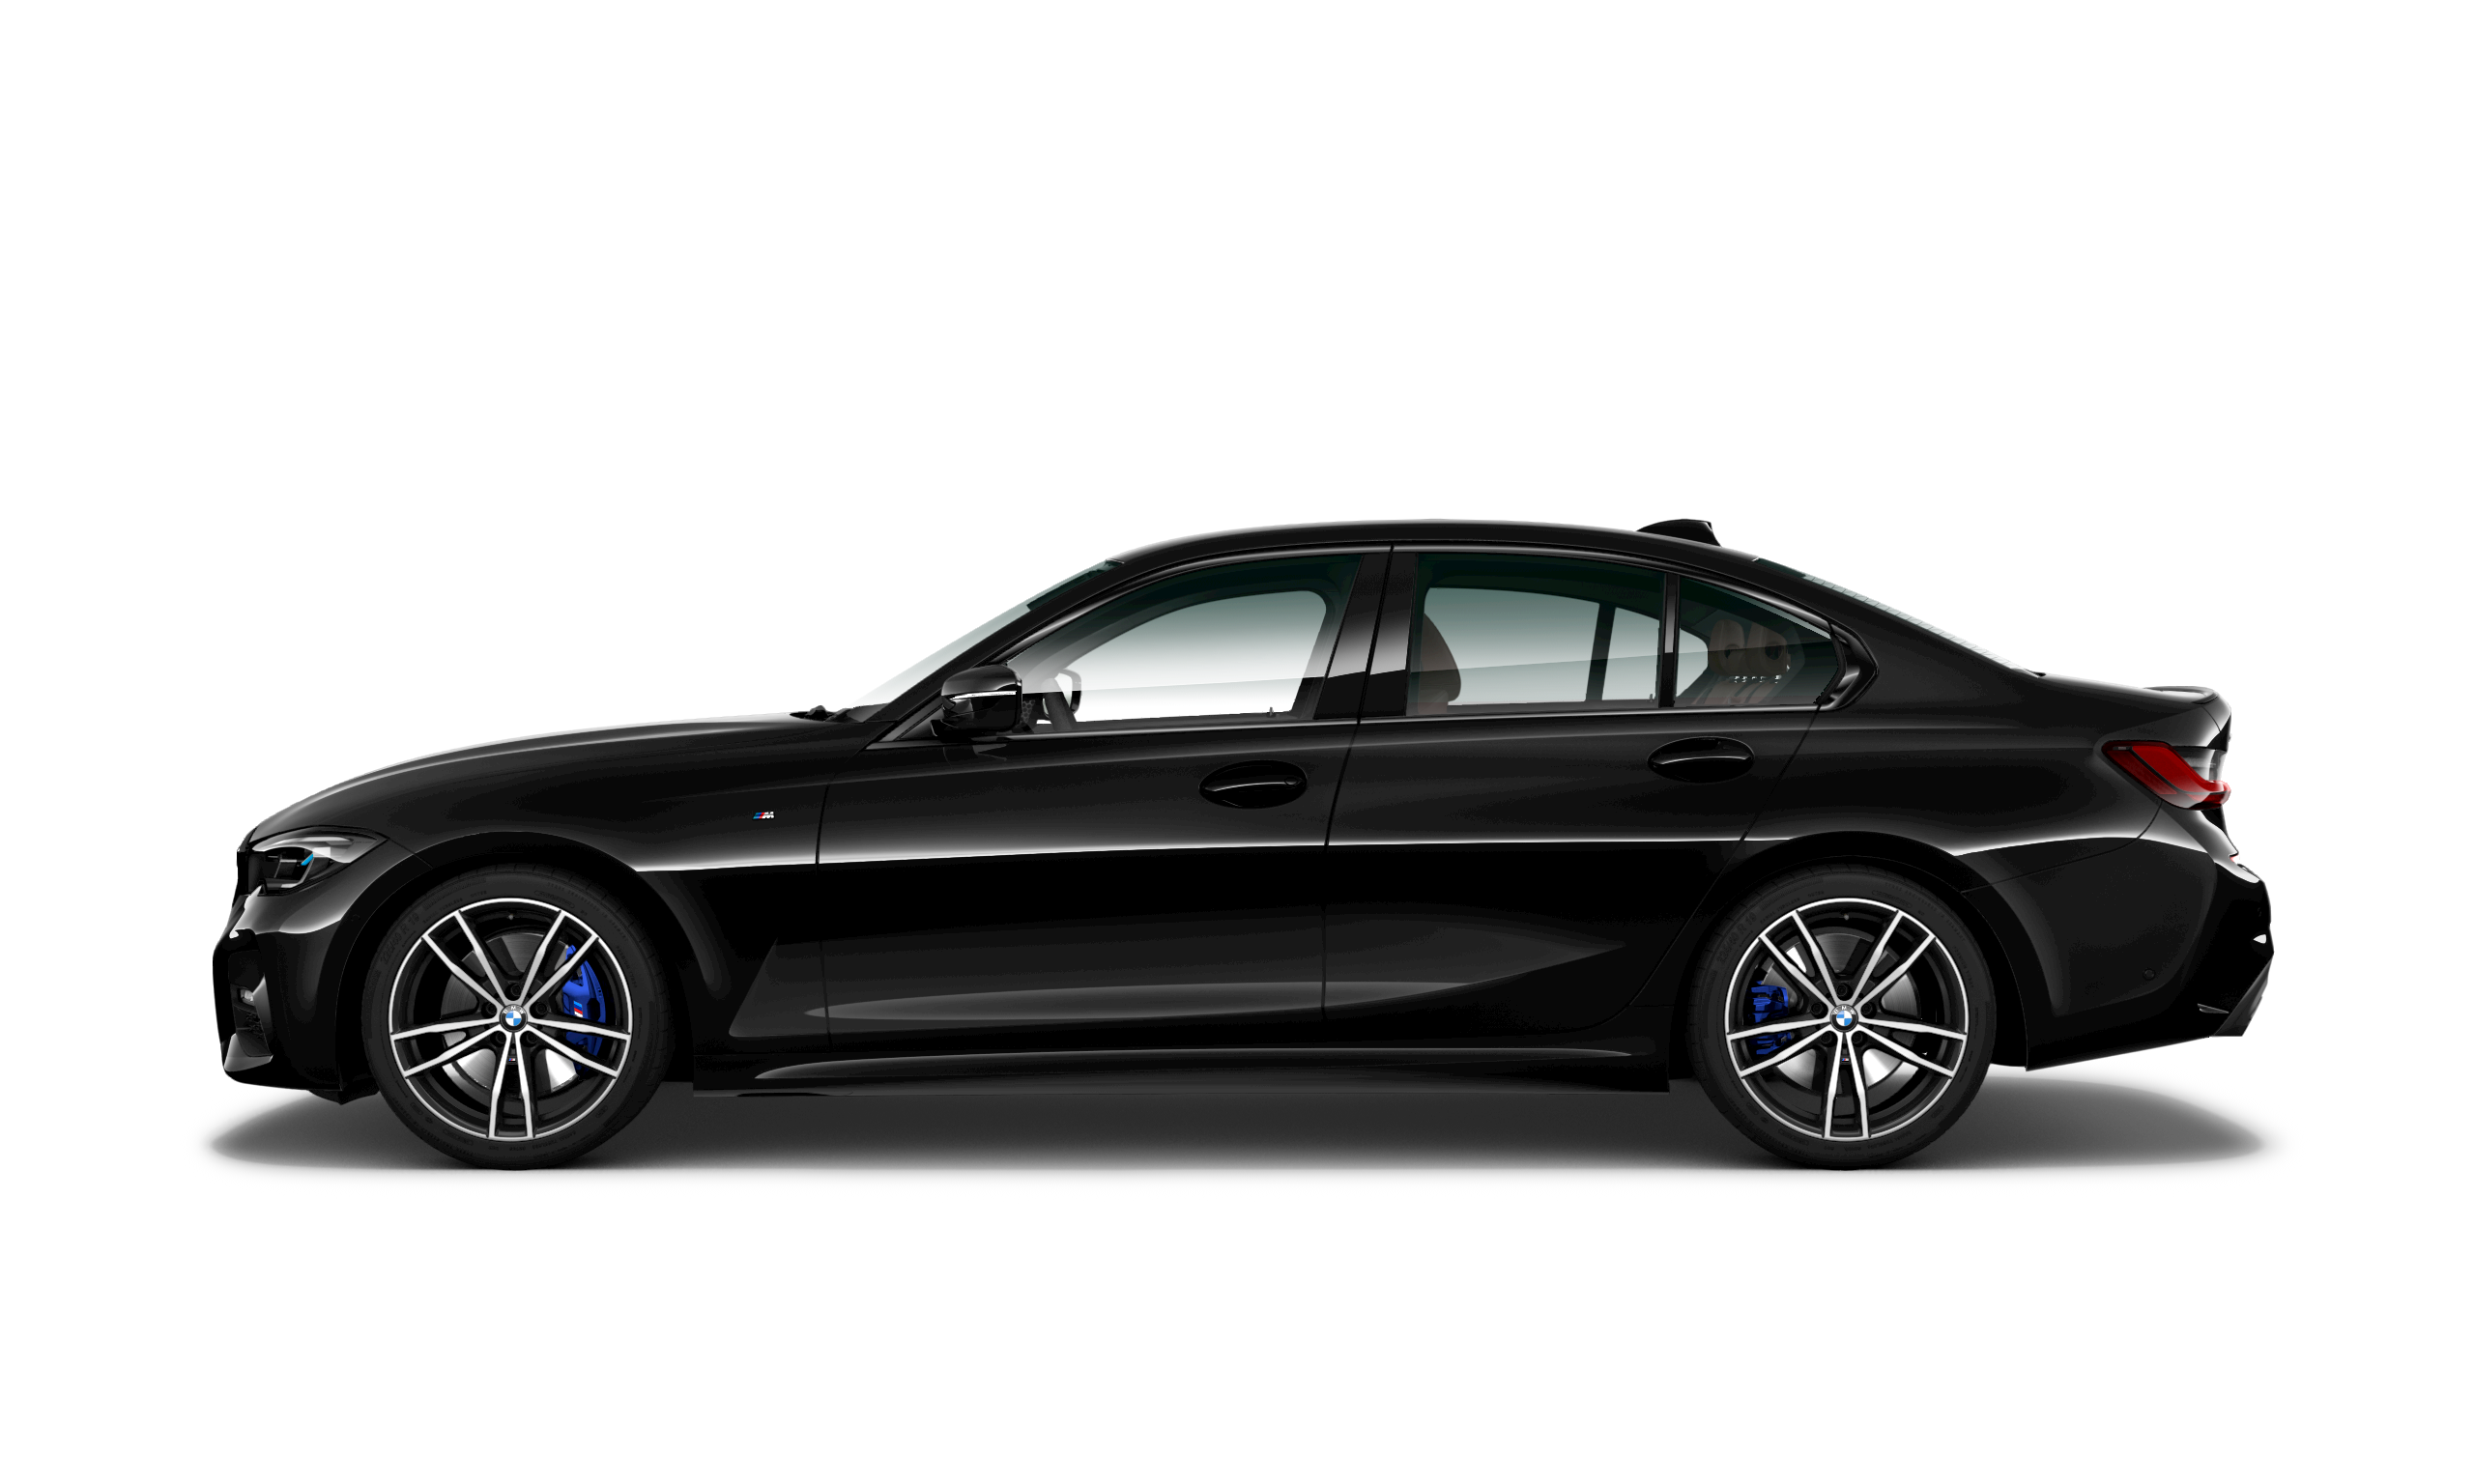 Bmw m sport pro. 520d XDRIVE M Sport Pure. BMW 320d XDRIVE. BMW 520d XDRIVE M Sport. BMW 530i XDRIVE M Sport Plus.